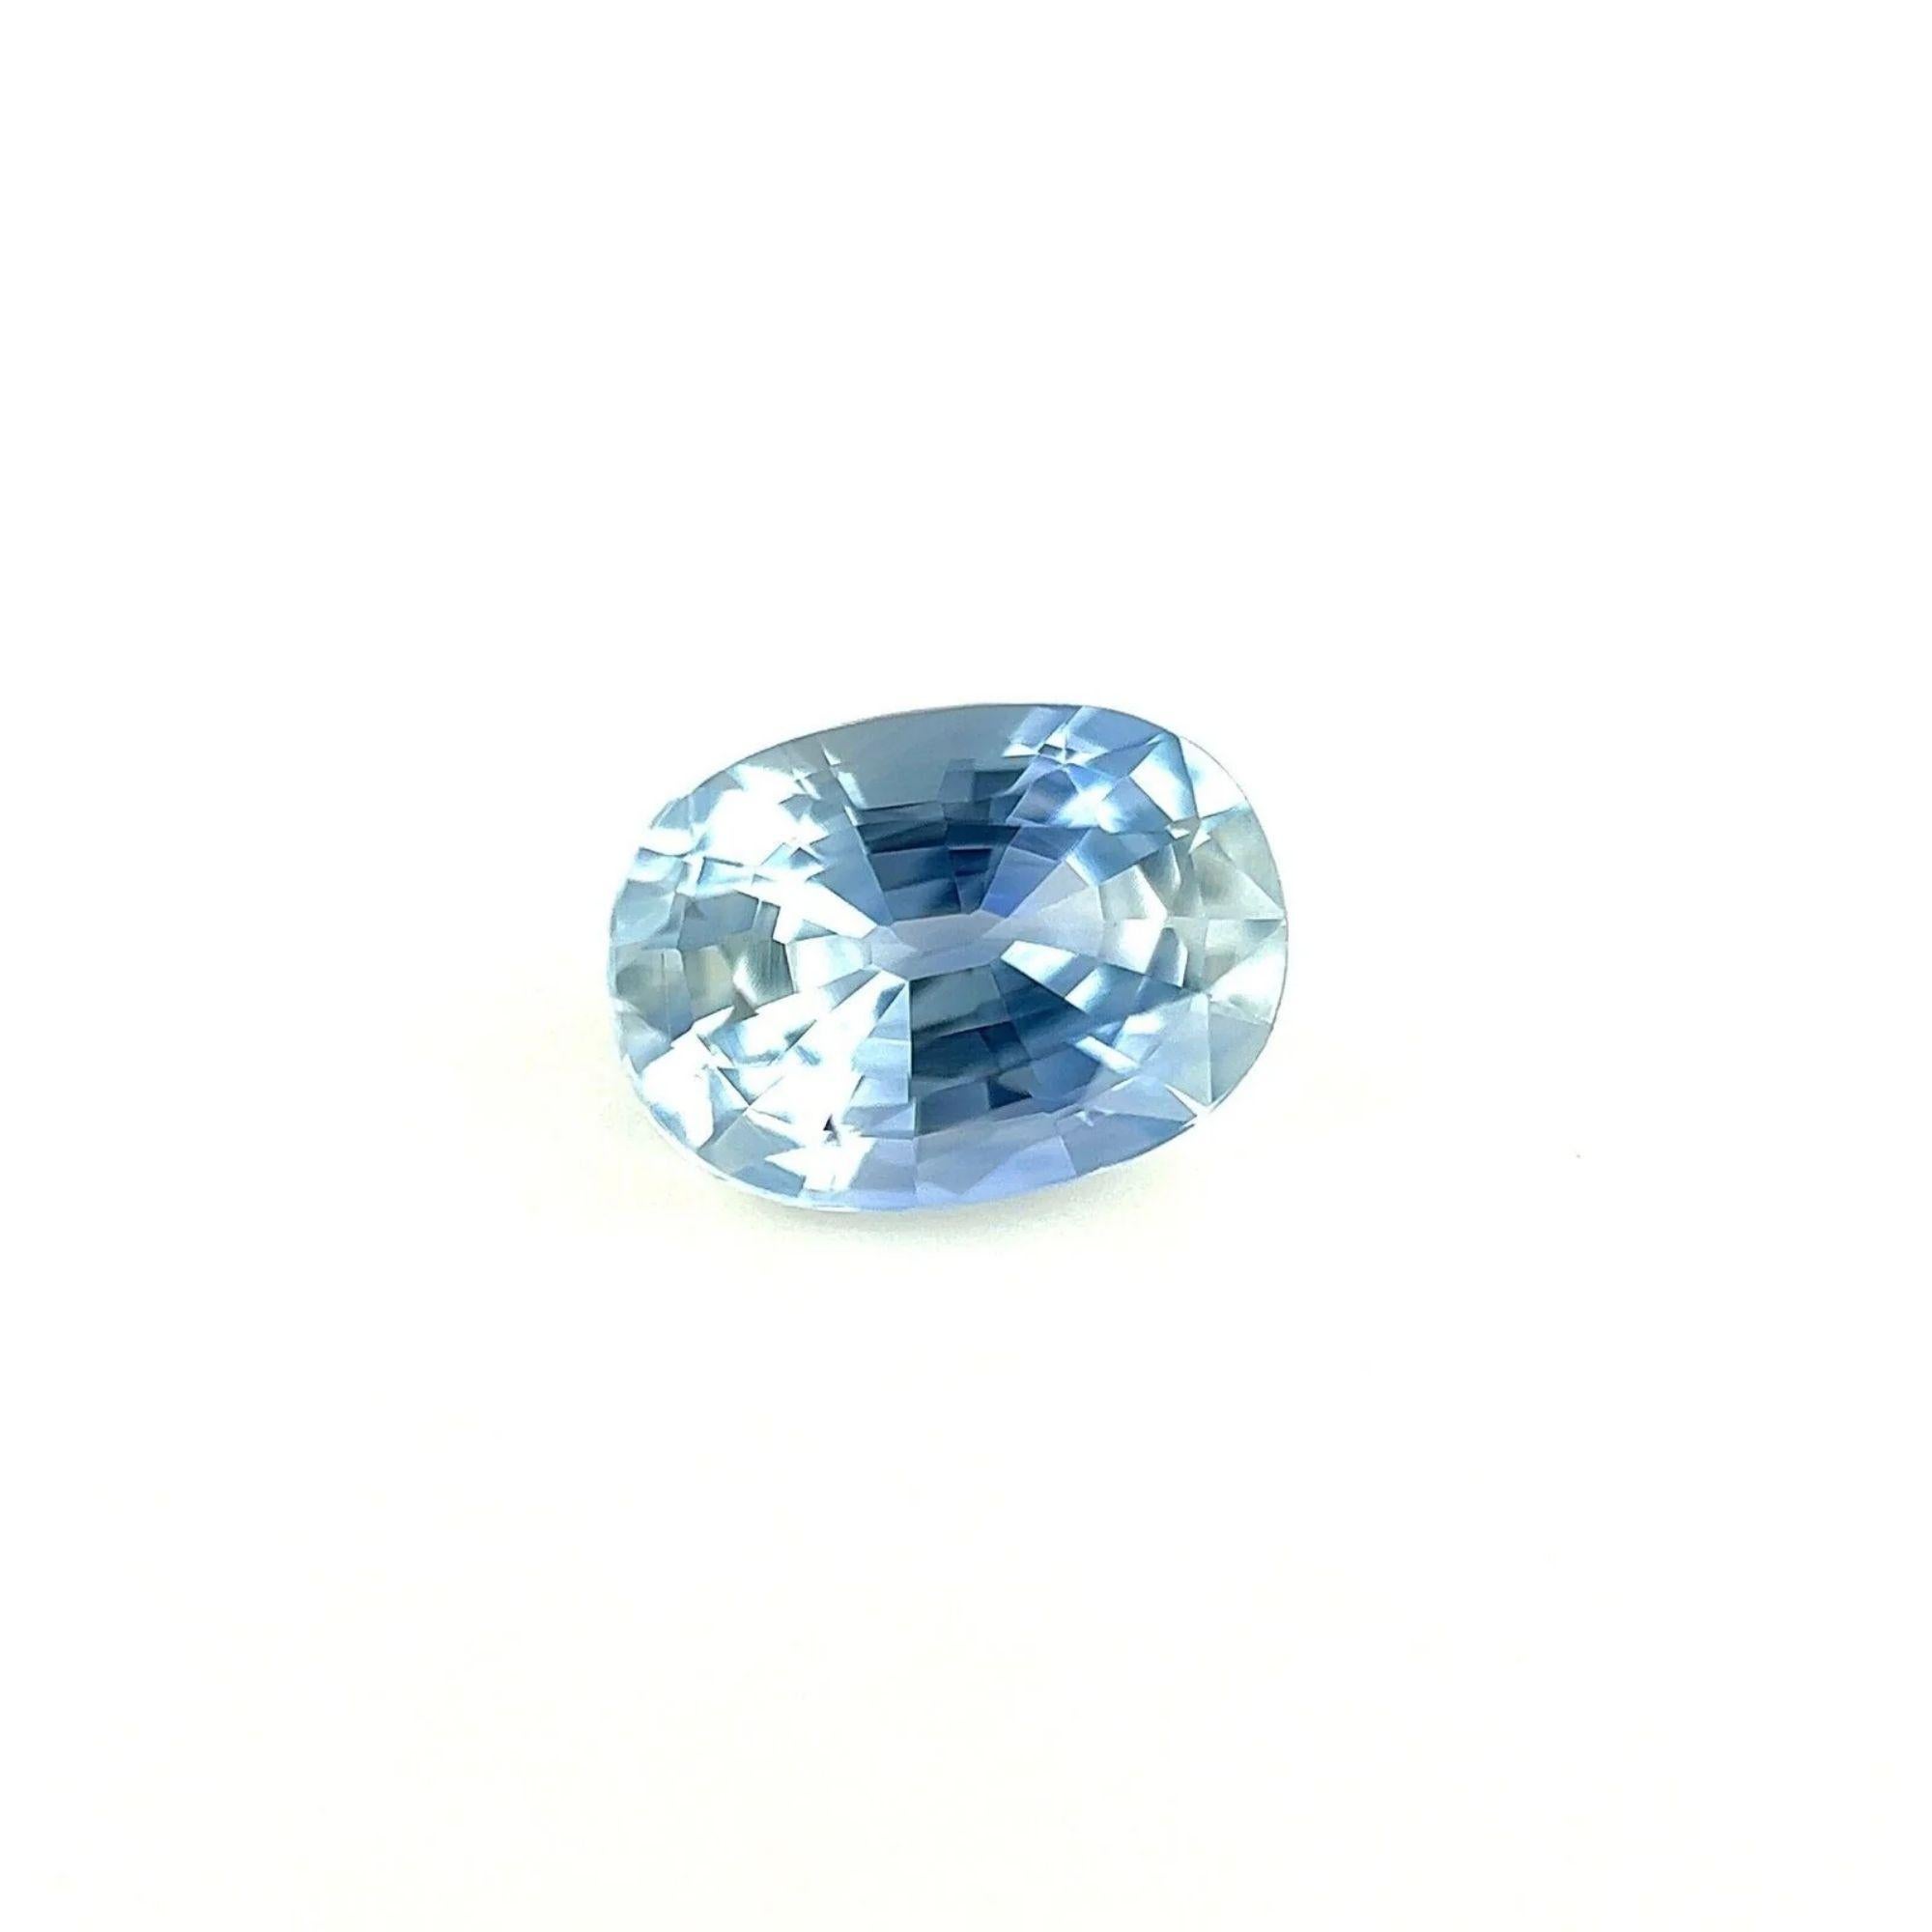 1.13ct Hellblauer Ceylon Saphir Oval Schliff Lose Seltener Edelstein 7X5mm VVS

Natürlicher hellblauer Ceylon-Saphir Edelstein.
1,13 Karat mit einer schönen hellblauen Farbe und ausgezeichneter Reinheit. Sehr sauberer Stein.
Auch hat einen